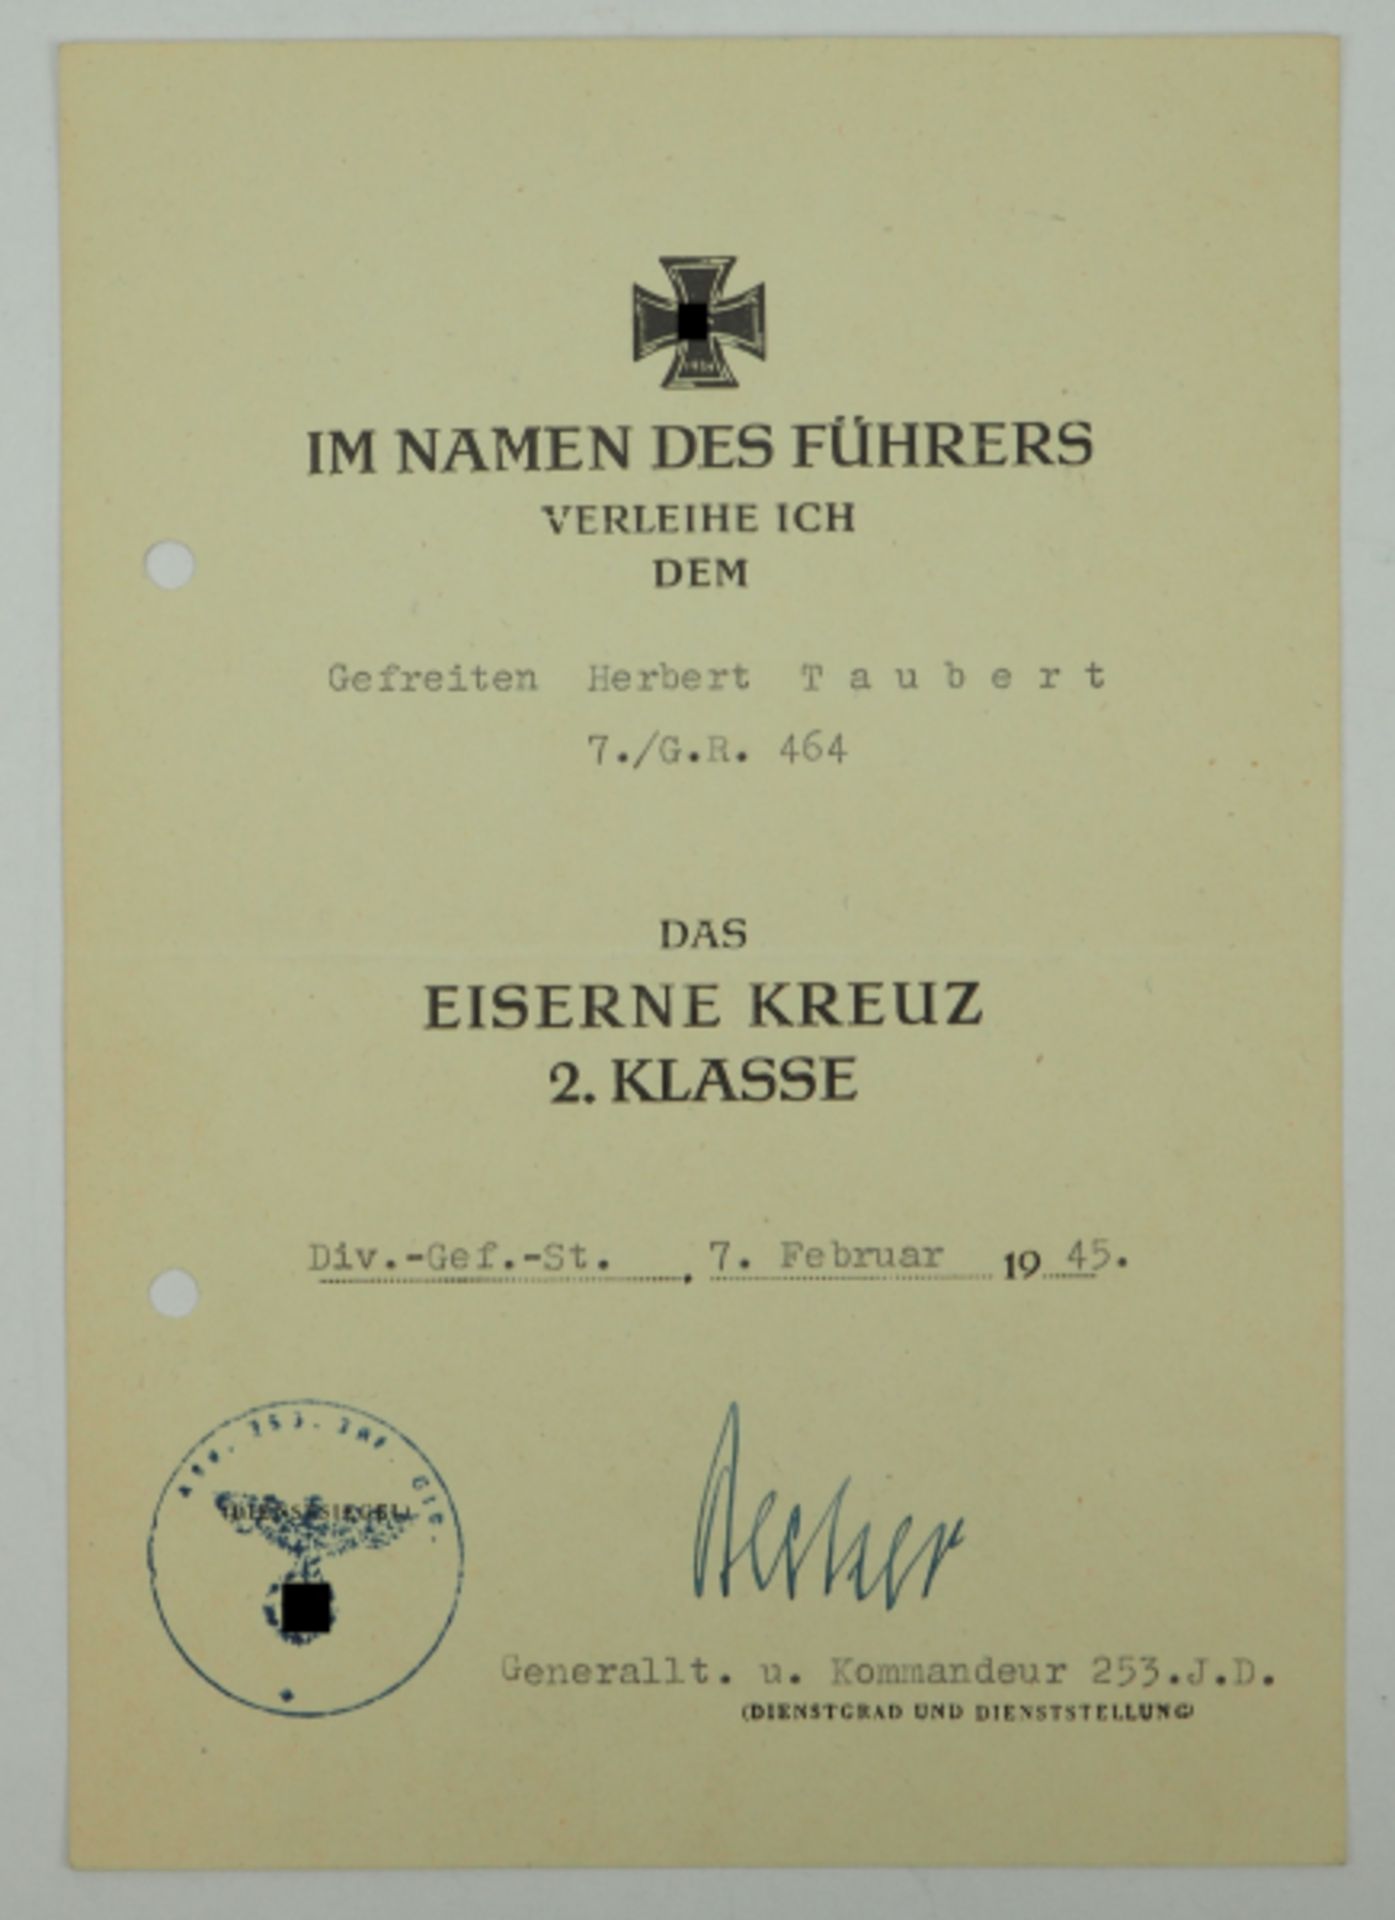 Eisernes Kreuz, 1939, 2. Klasse Urkunde für einen Gefreiten der 7./ G.R. 464 - Carl Becker.